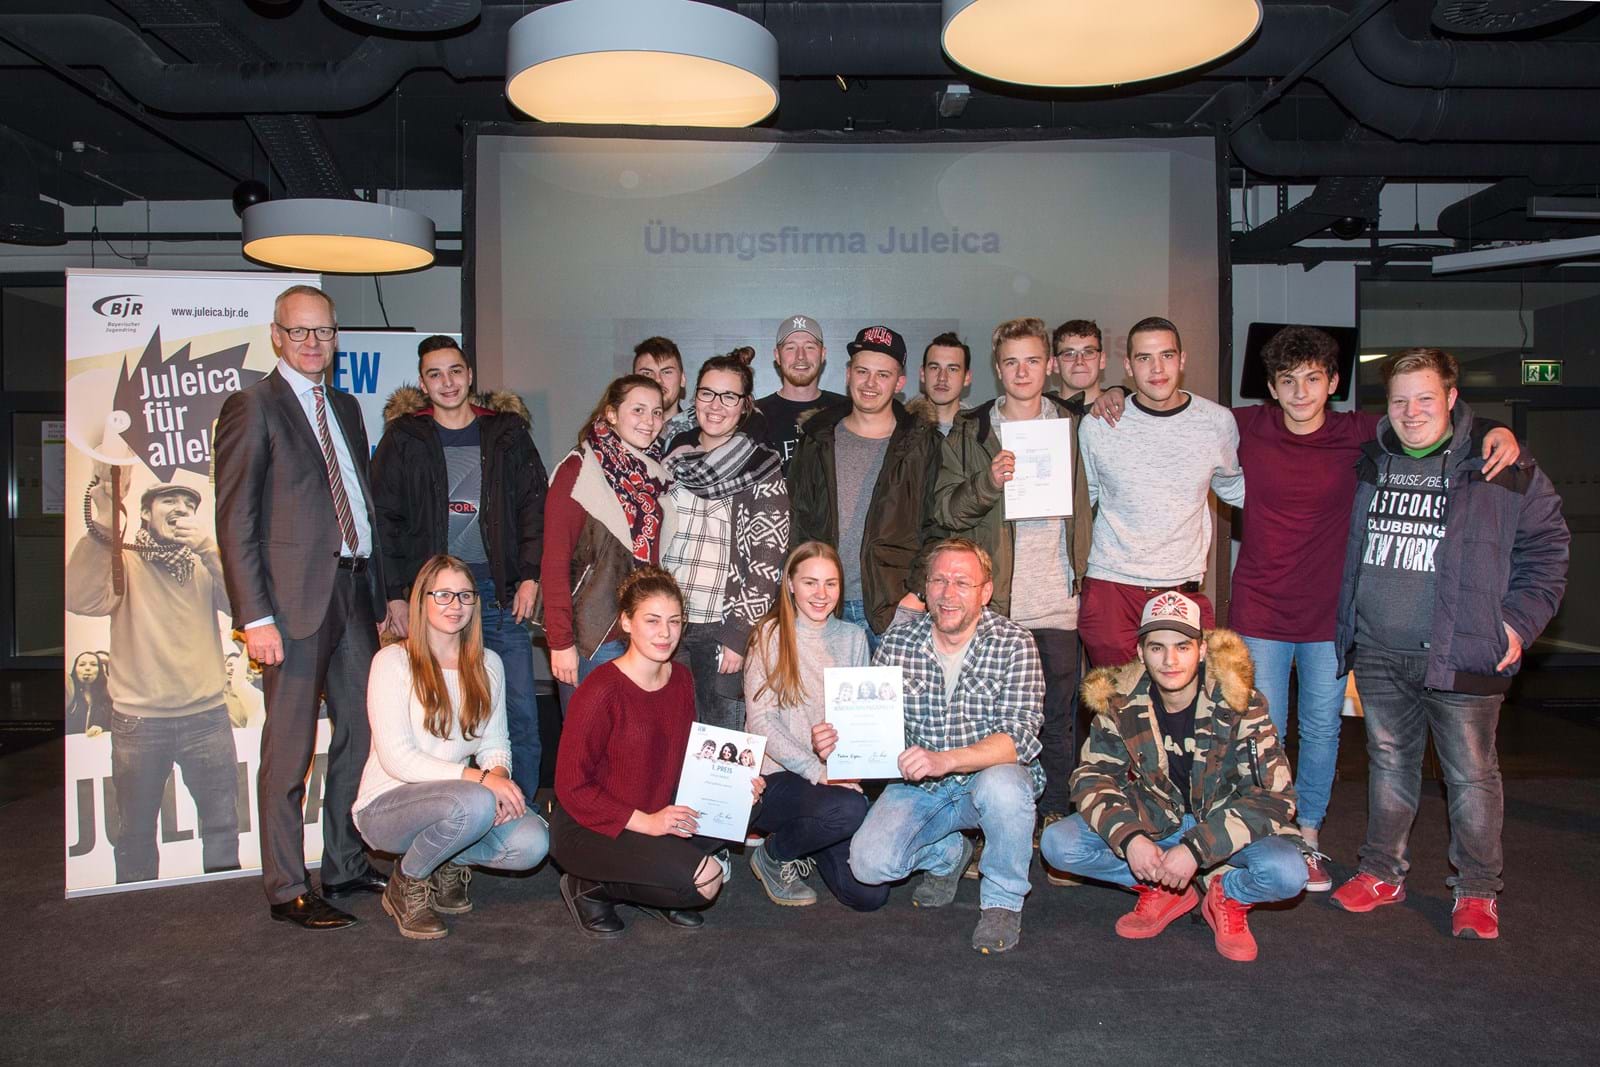 LEW-Vorstandsmitglied Dr. Markus Litpher (links) überreichte den 1. Preis an die Jugendlichen des Jugendtreffs Bimbo aus Bad Wörishofen für das Projekt "Übungsfirma Juleica".